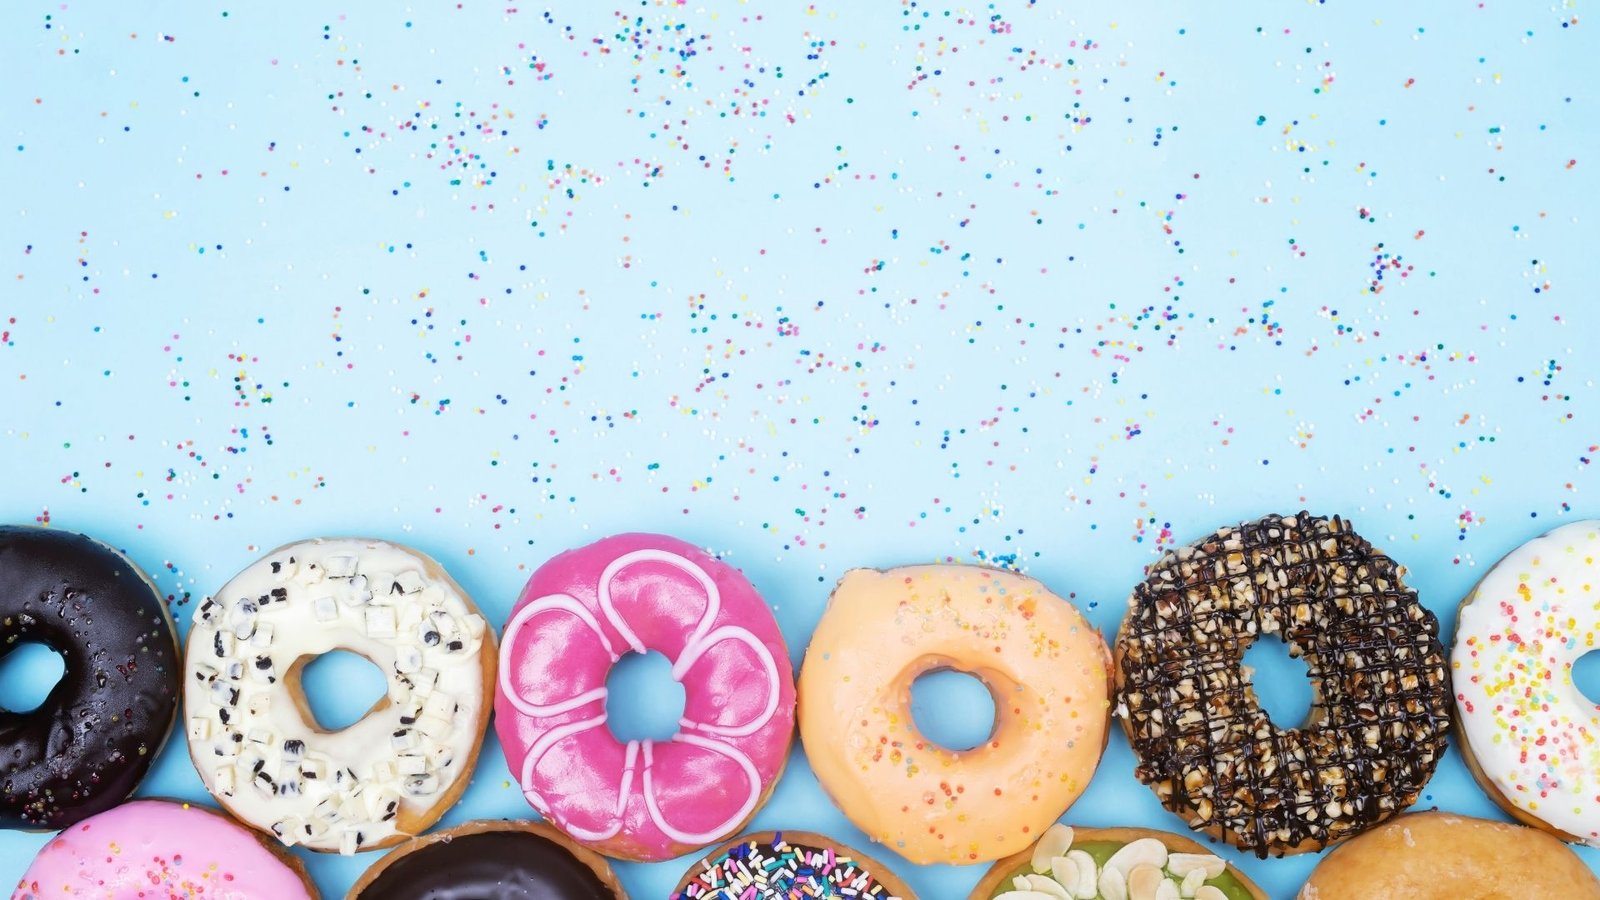 tatlı krallığının baş tacı donut'un hikayesi nedir